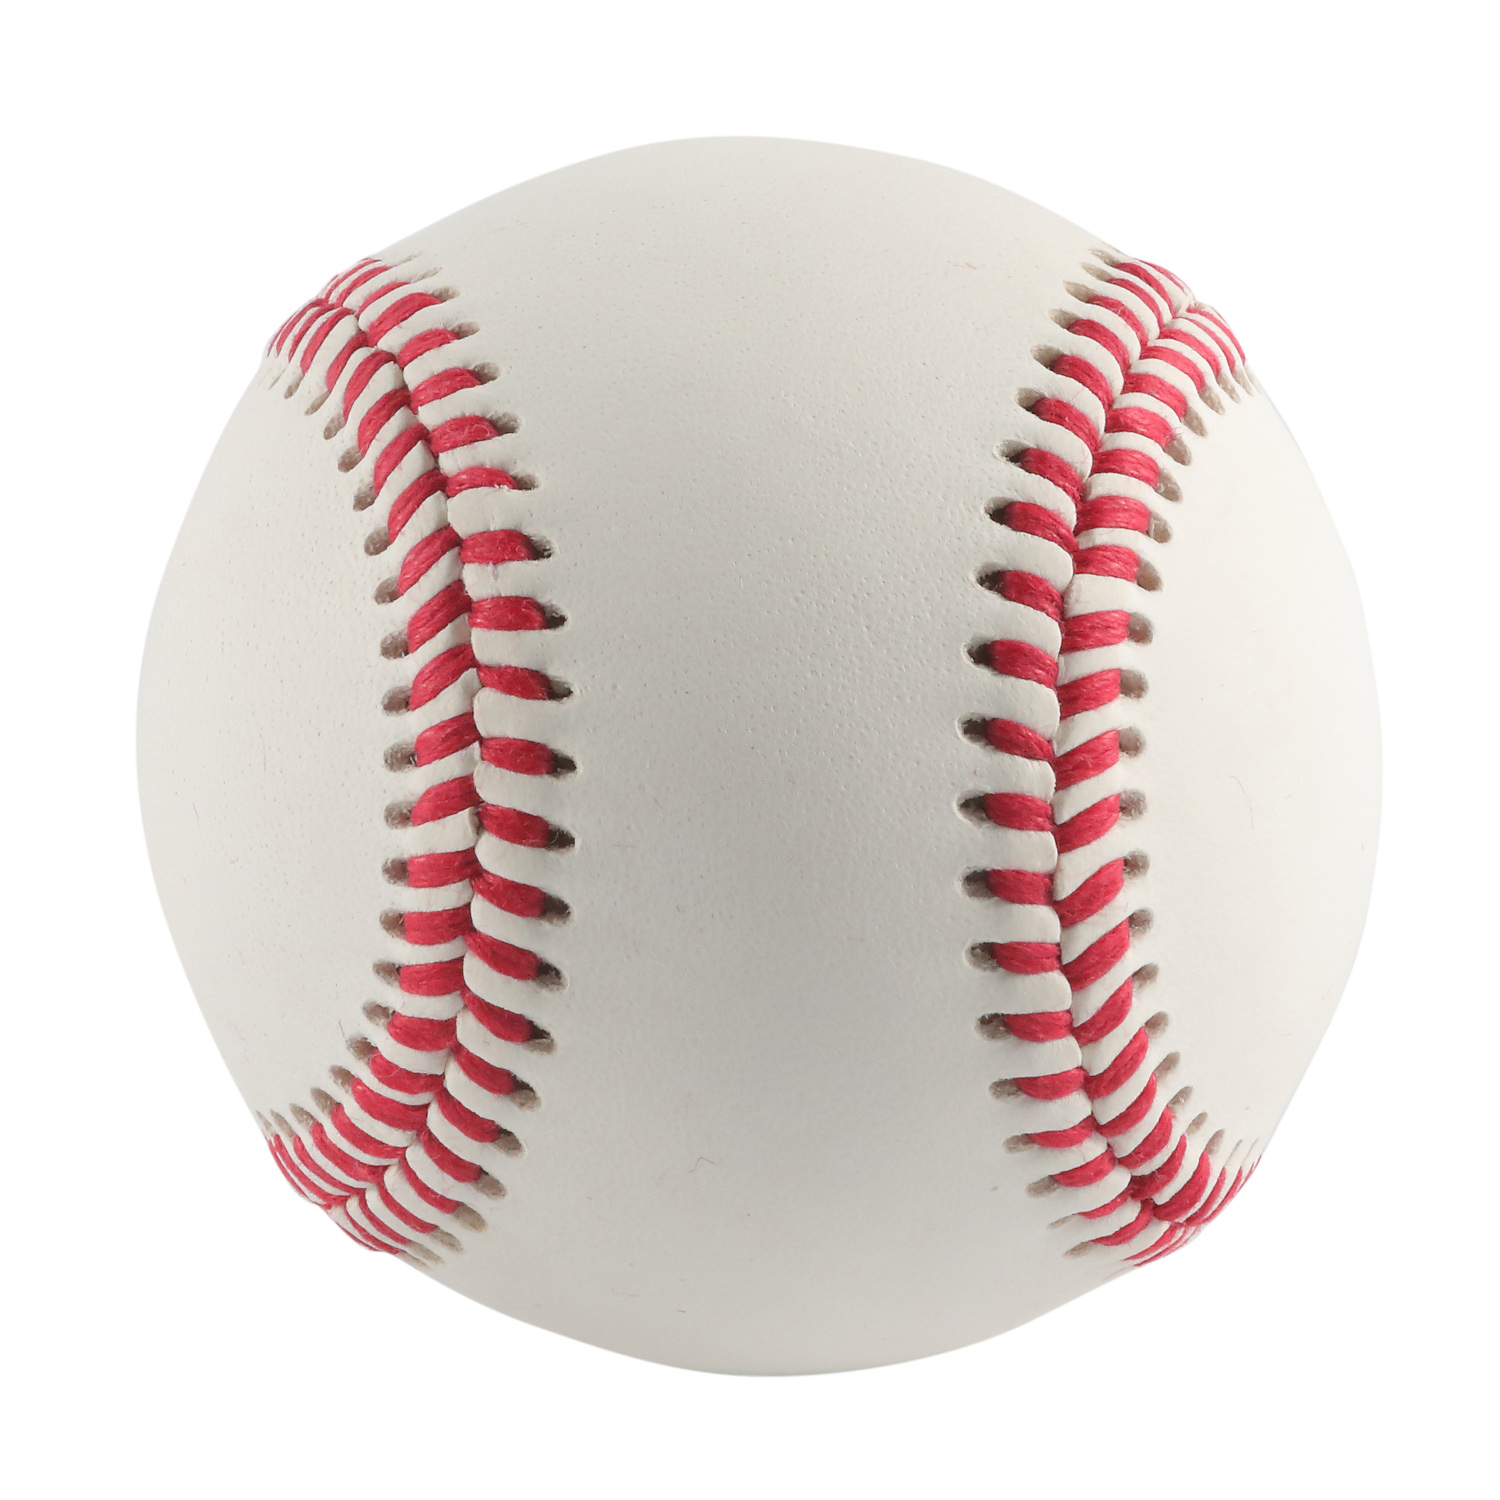 9 'cubierta de cuero de vaca de grano completo Major Little League College oficial juego profesional pelota de béisbol de cuero